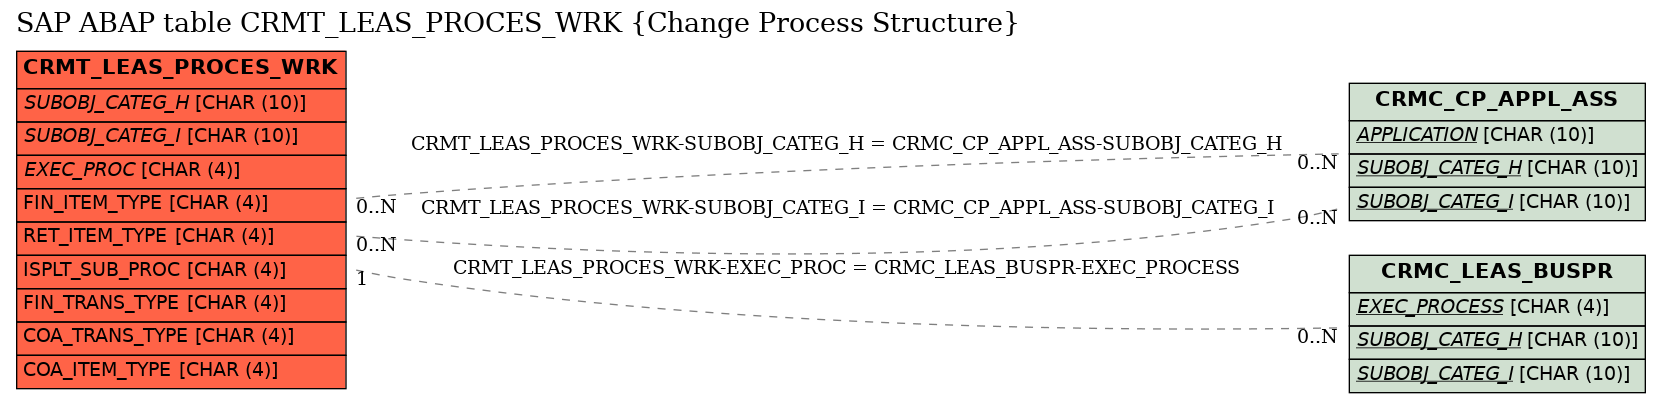 E-R Diagram for table CRMT_LEAS_PROCES_WRK (Change Process Structure)